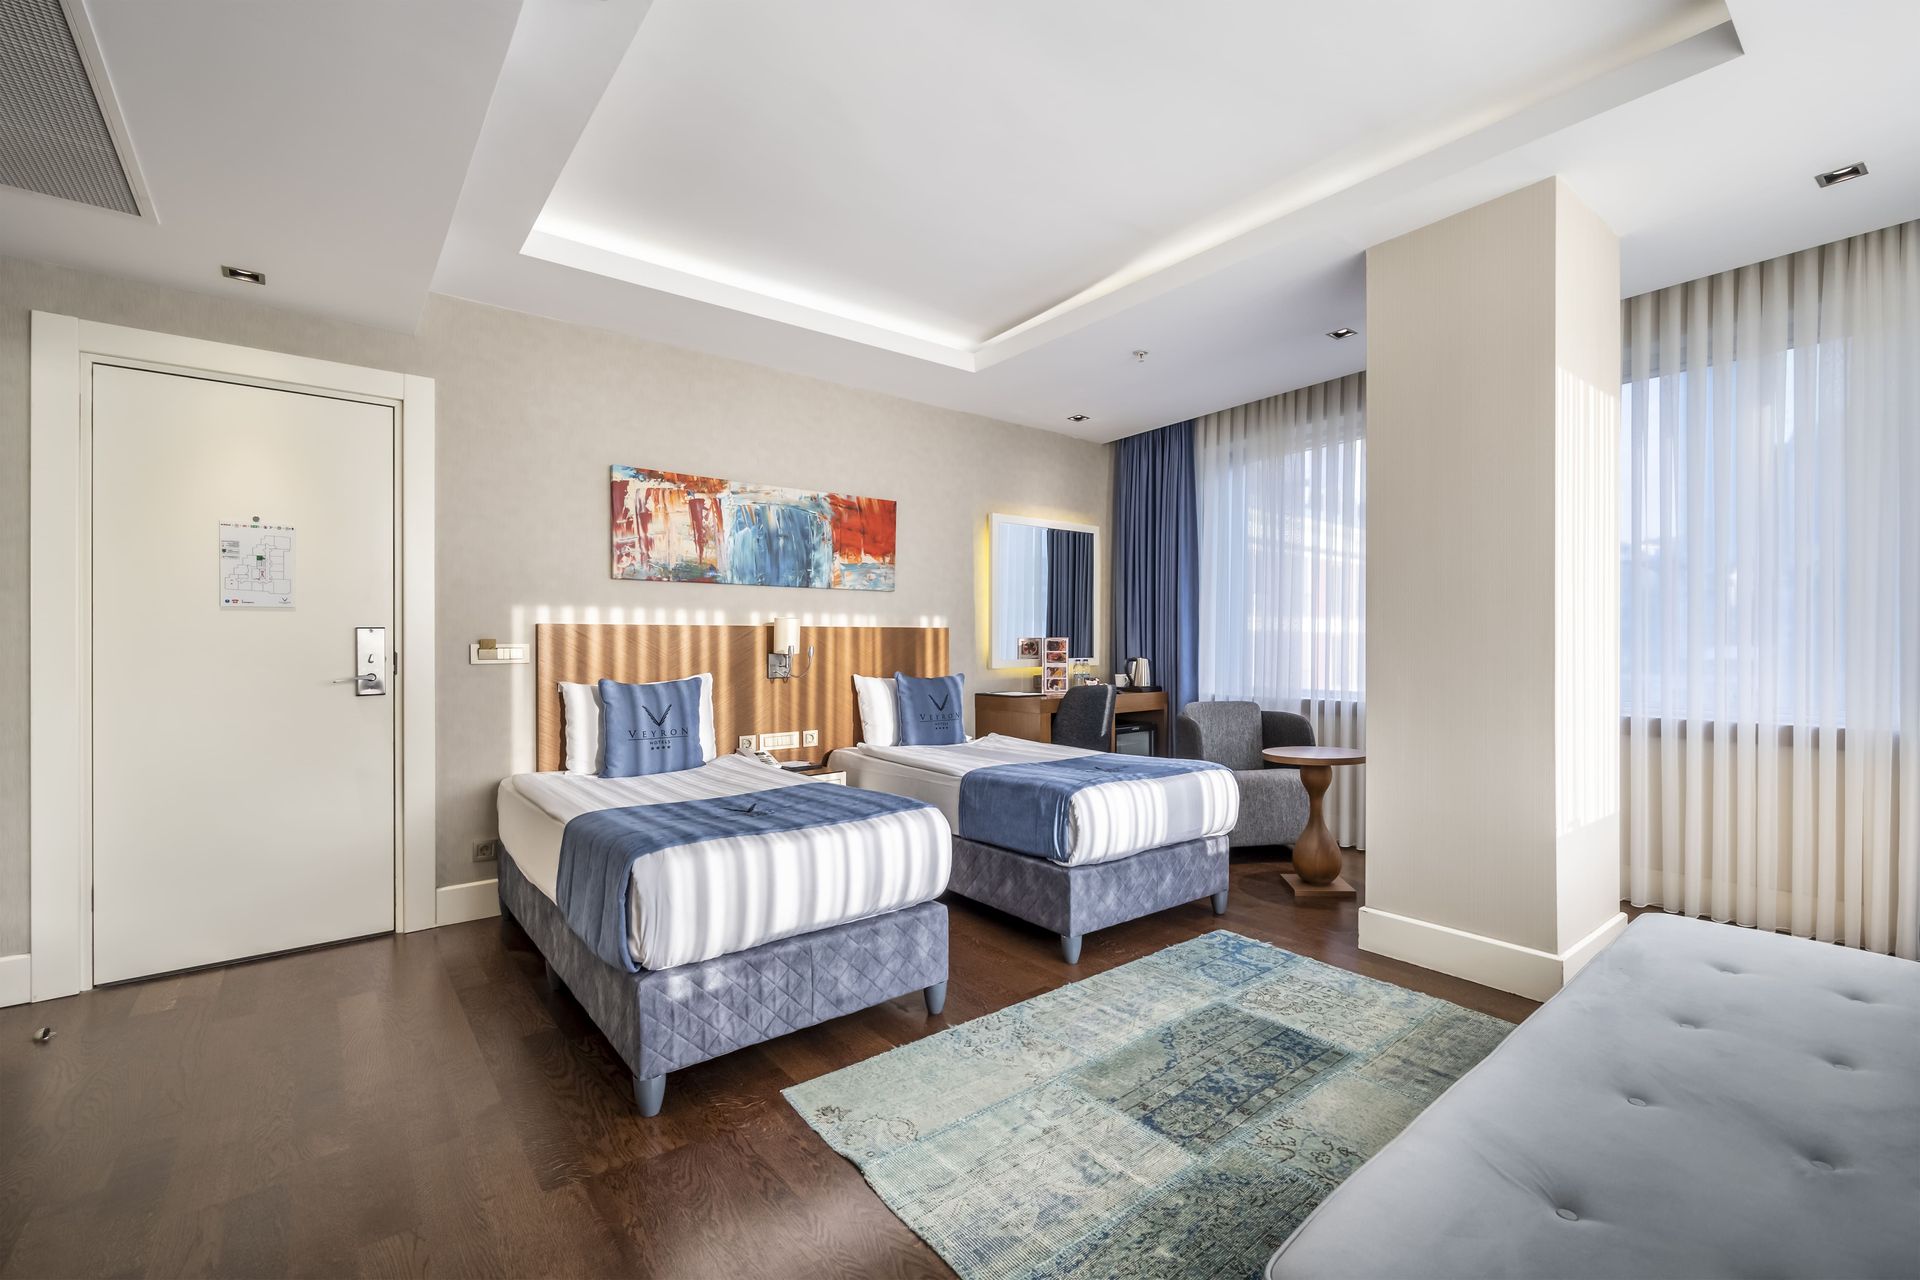 Veyron Hotels & Spa, İstanbul, Birbirine Bağlı  İki Çift Kişilik Oda